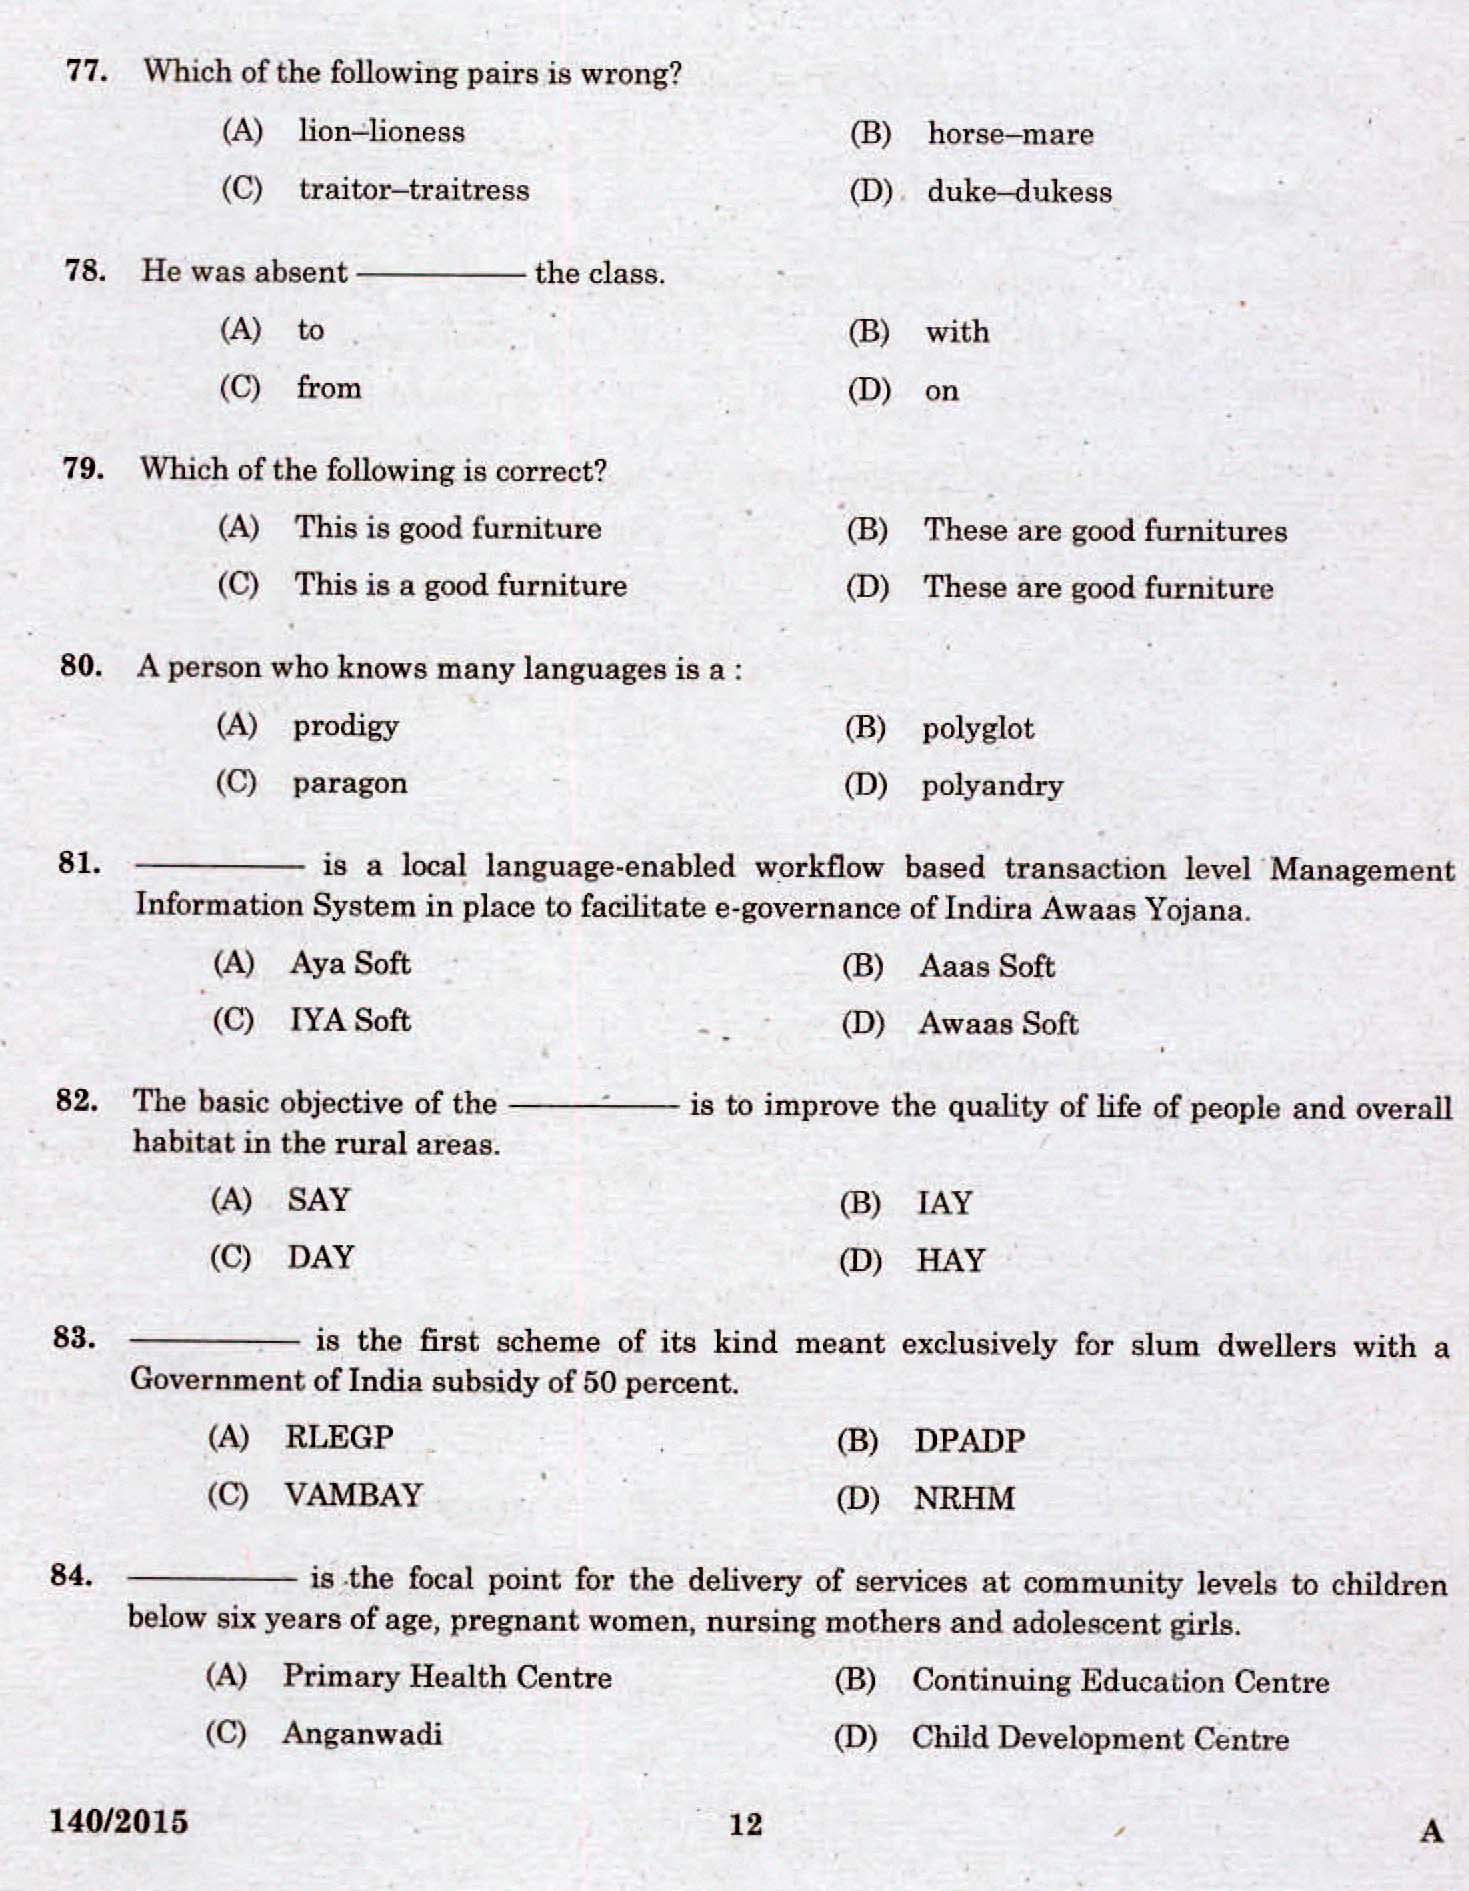 Kerala PSC Assistant Grade II Exam 2015 Question Paper Code 1402015 10